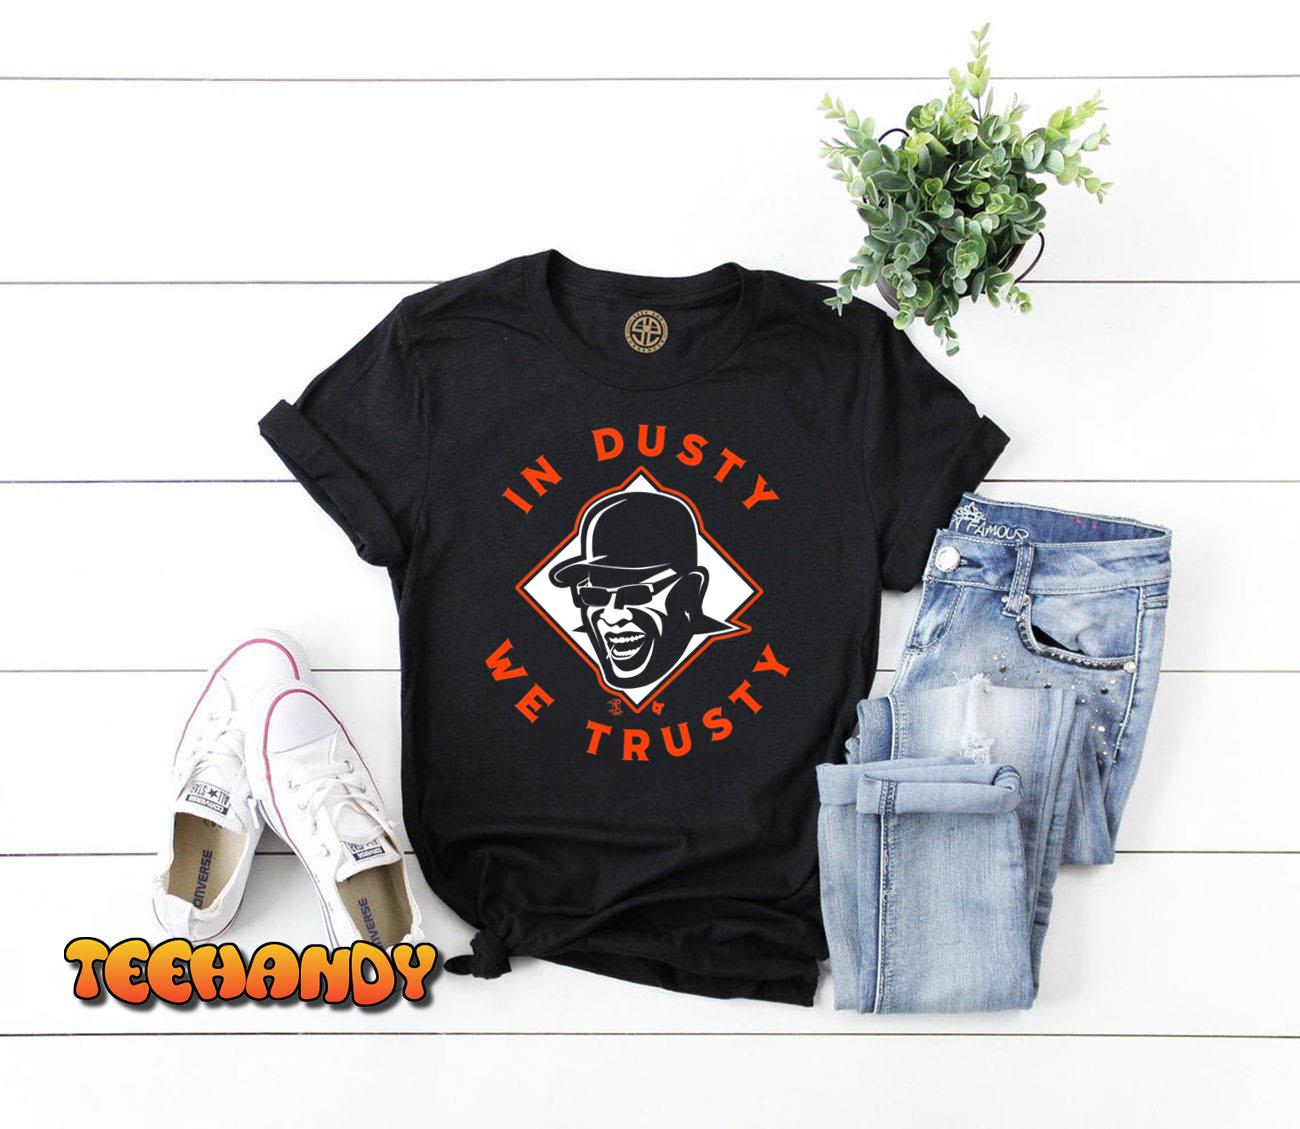  Dusty Baker - In Dusty We Trusty - Houston Baseball Long Sleeve  T-Shirt : Sports & Outdoors